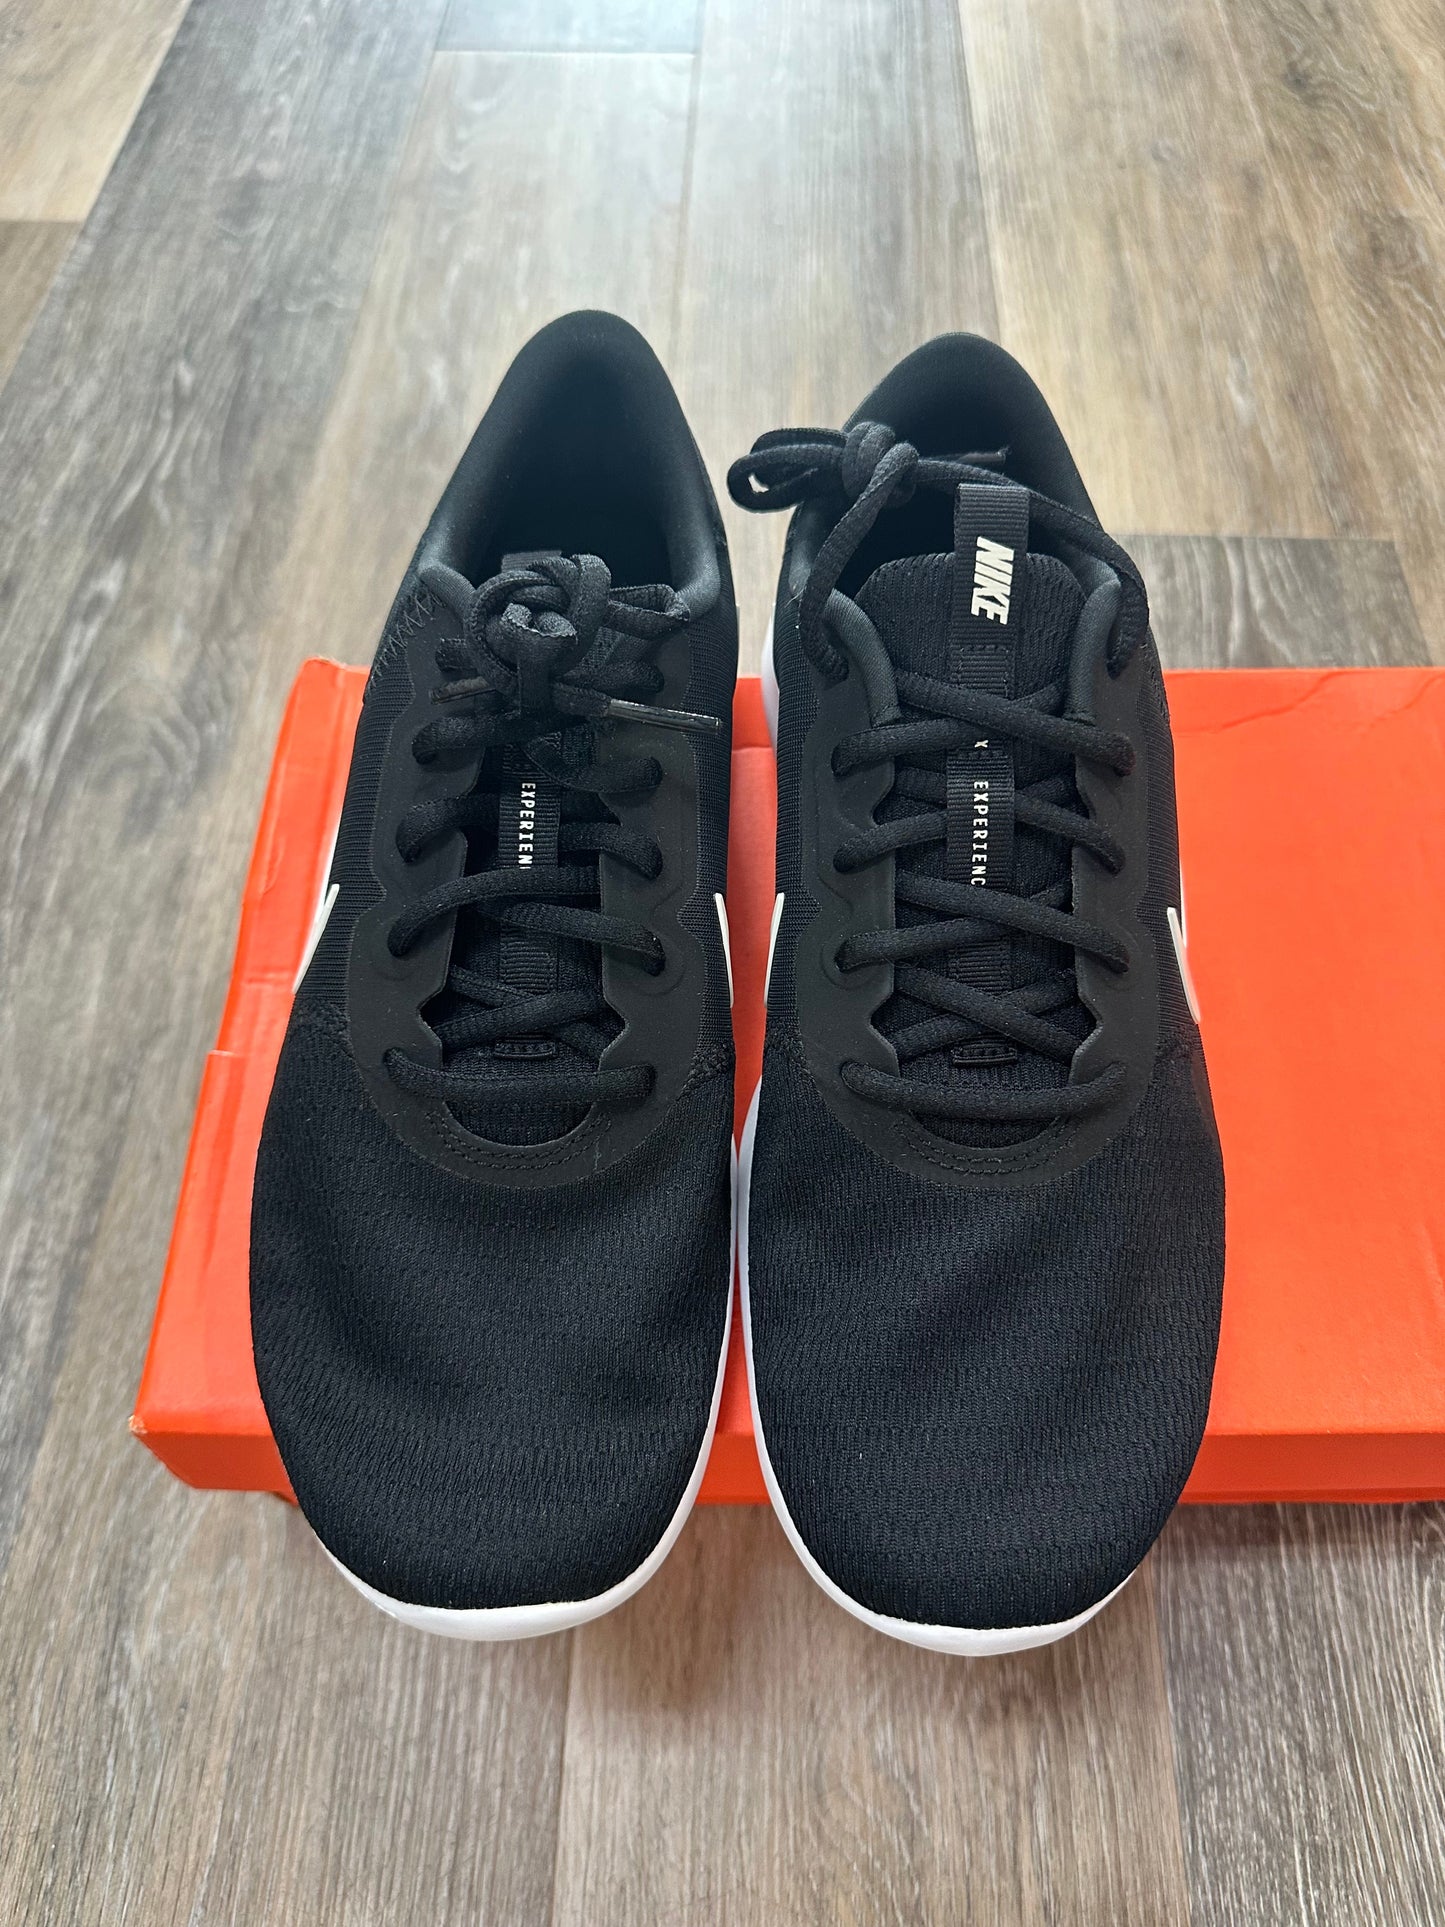 Black Shoes Athletic Nike, Size 9